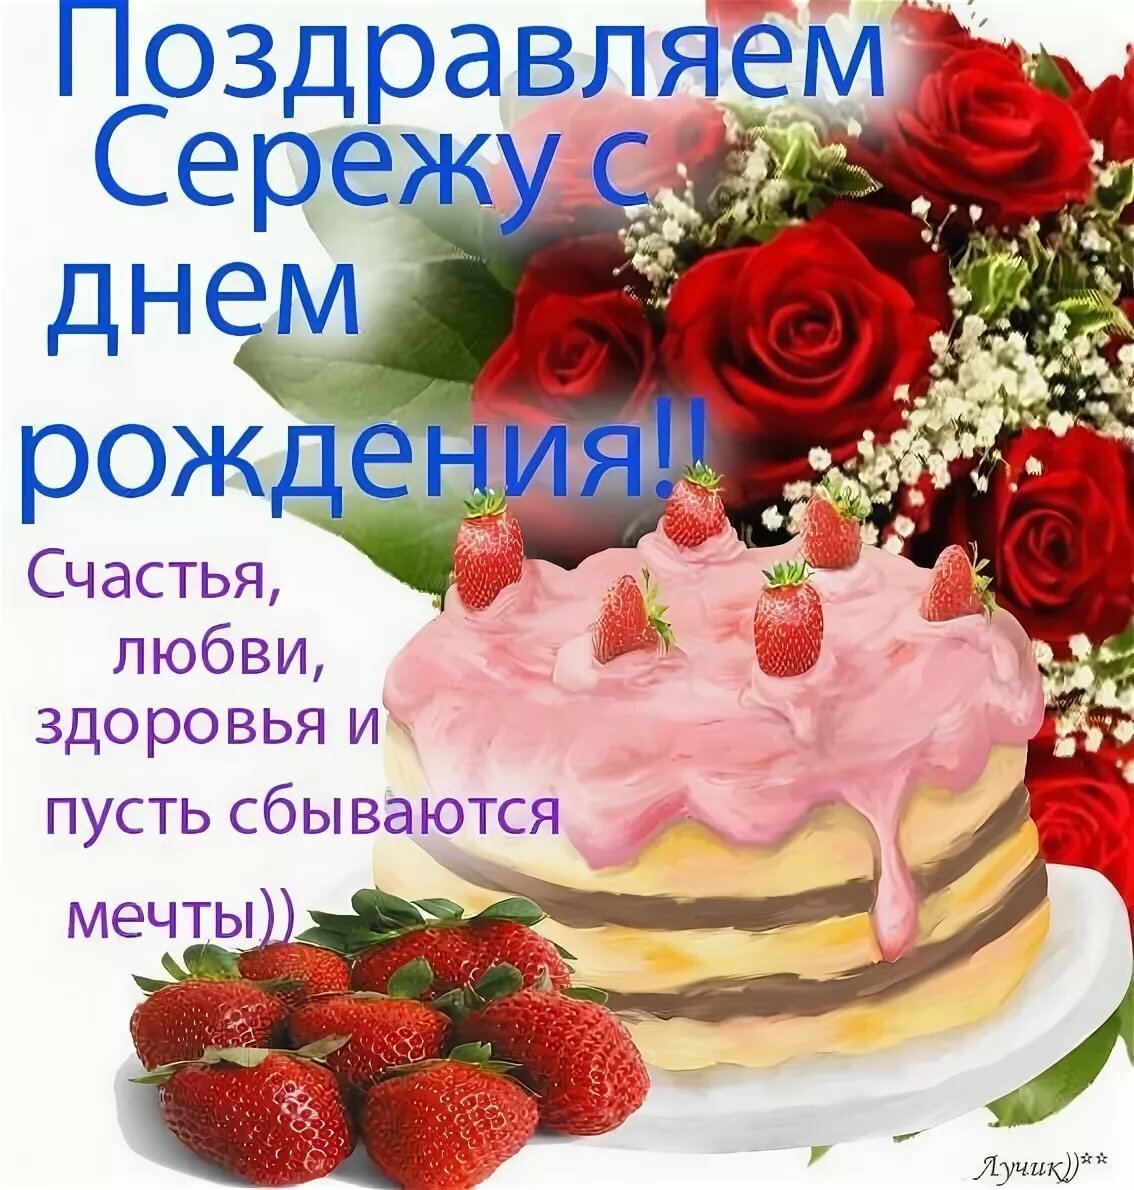 Поздравление с днем рождения пожелание здоровья. Поздравления с днём рождения Скргею. Поздравления с днём рождения Мергею.